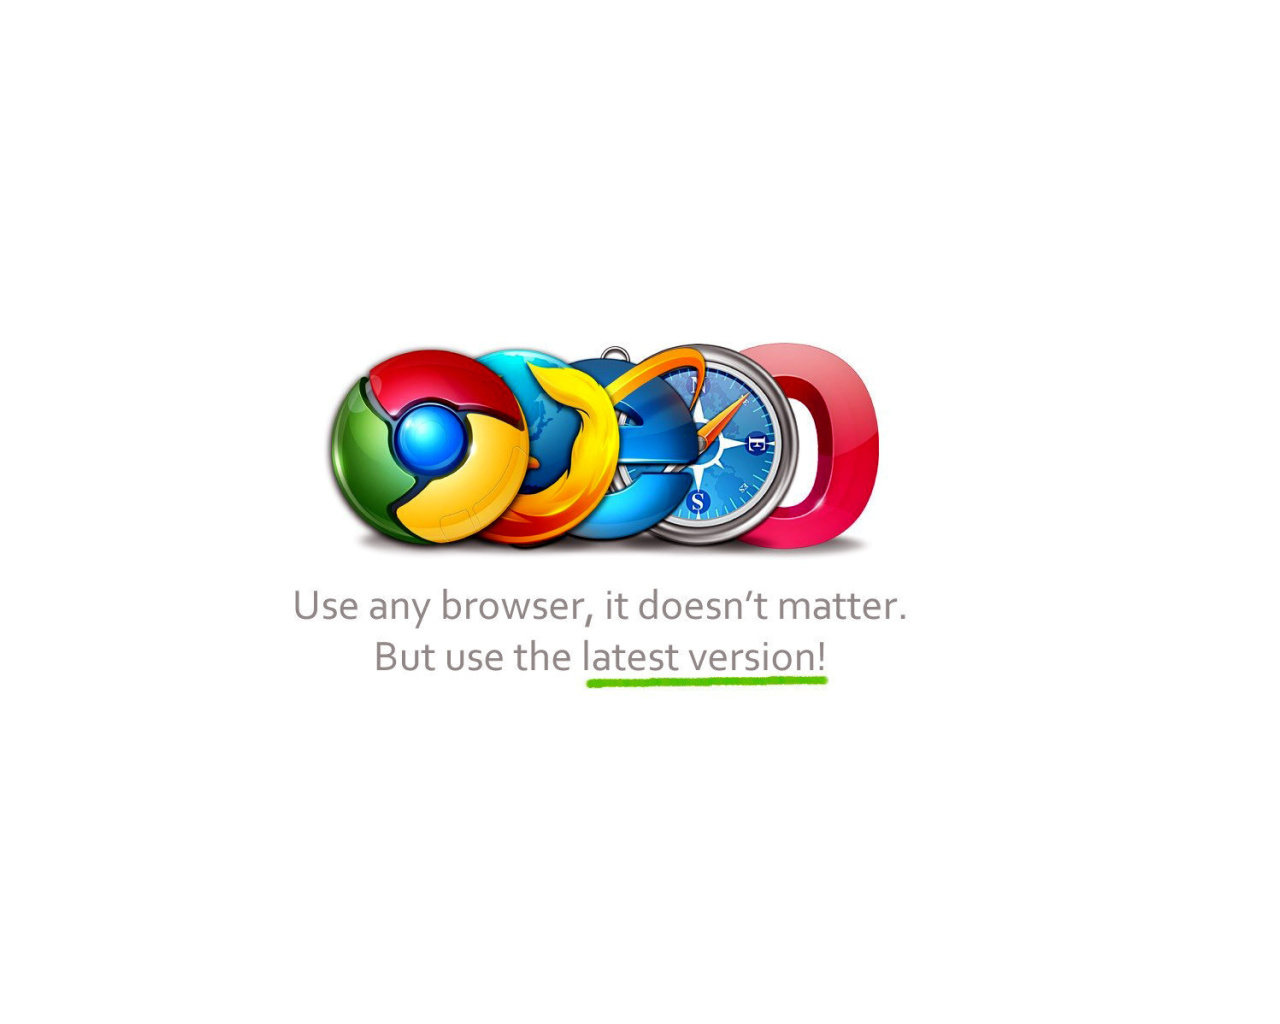 Das Choose Best Web Browser Wallpaper 1280x1024